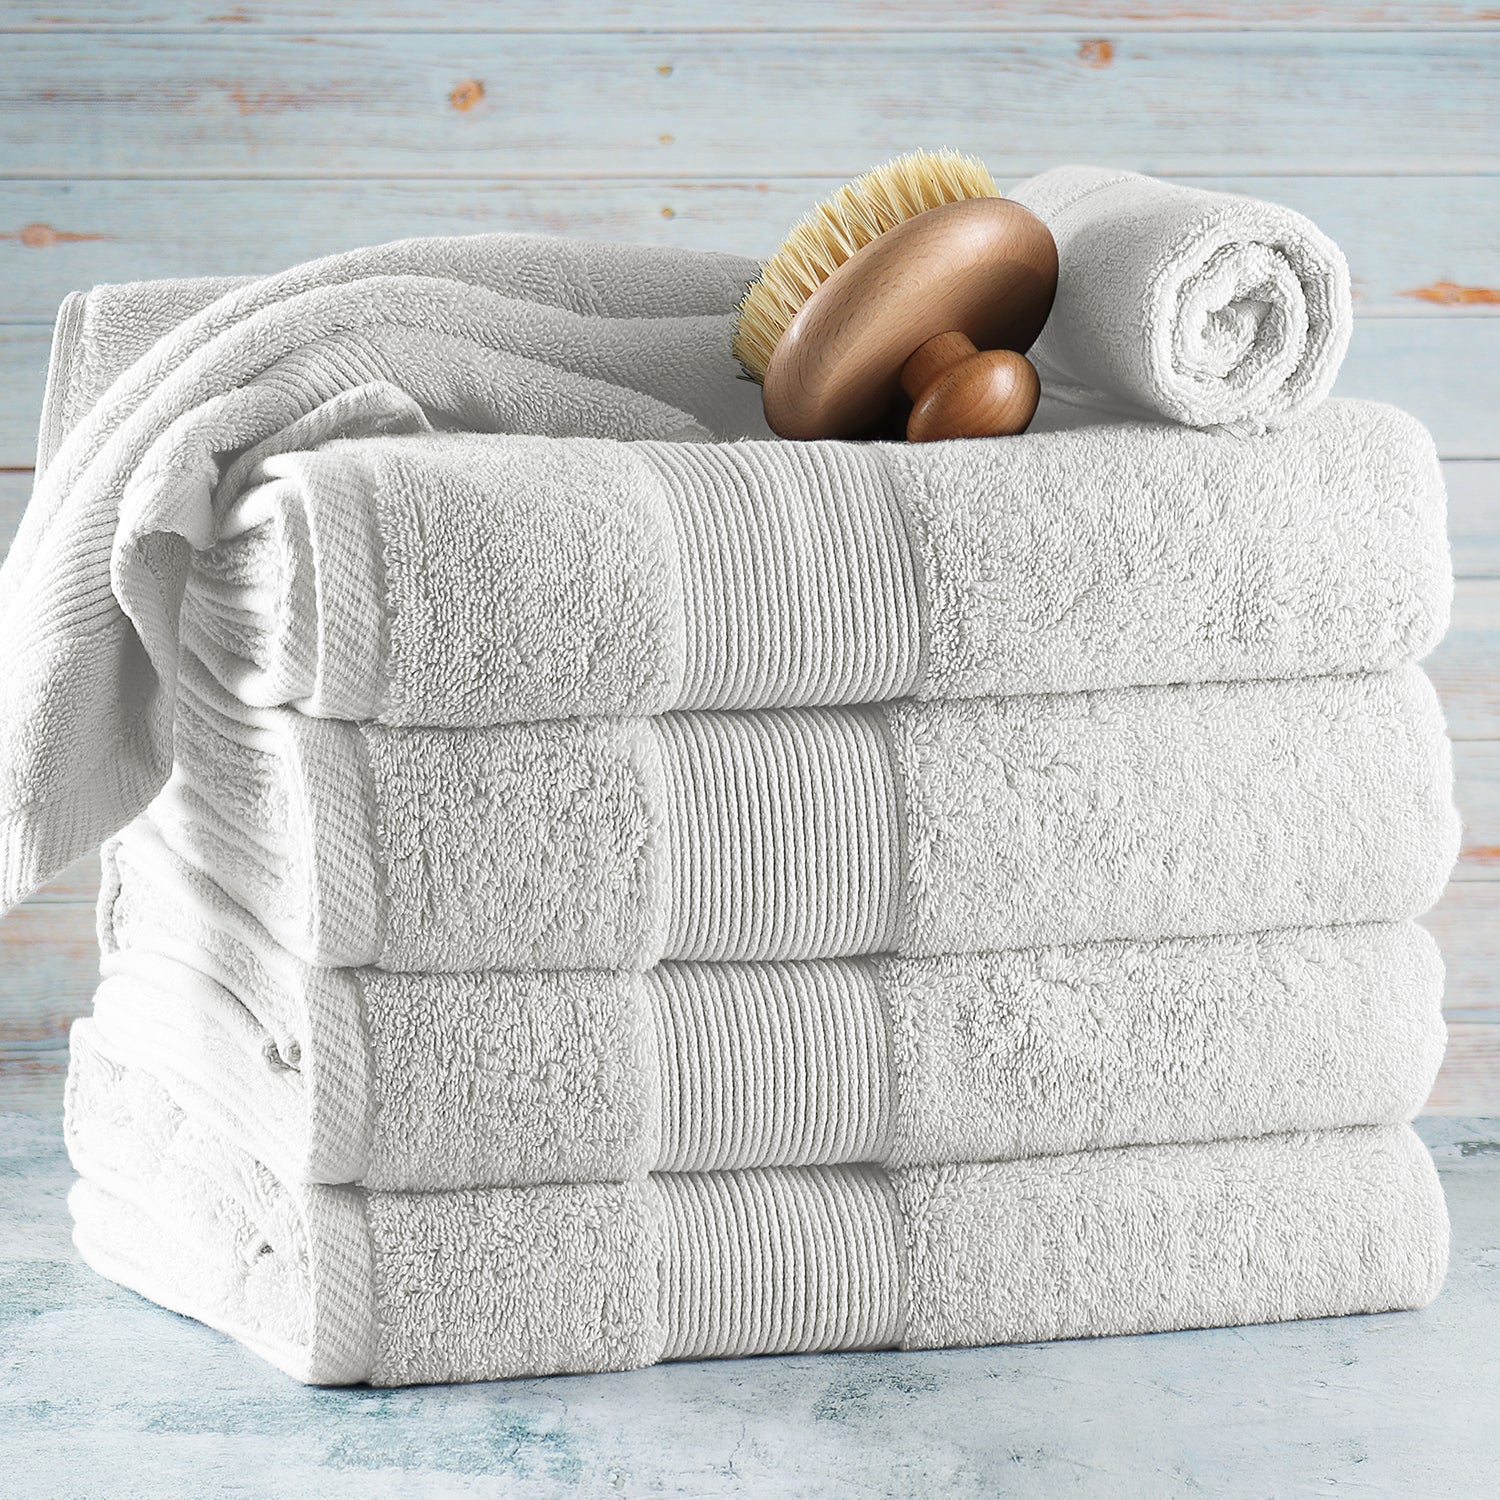 Bath / Hand Towels – Express Linen